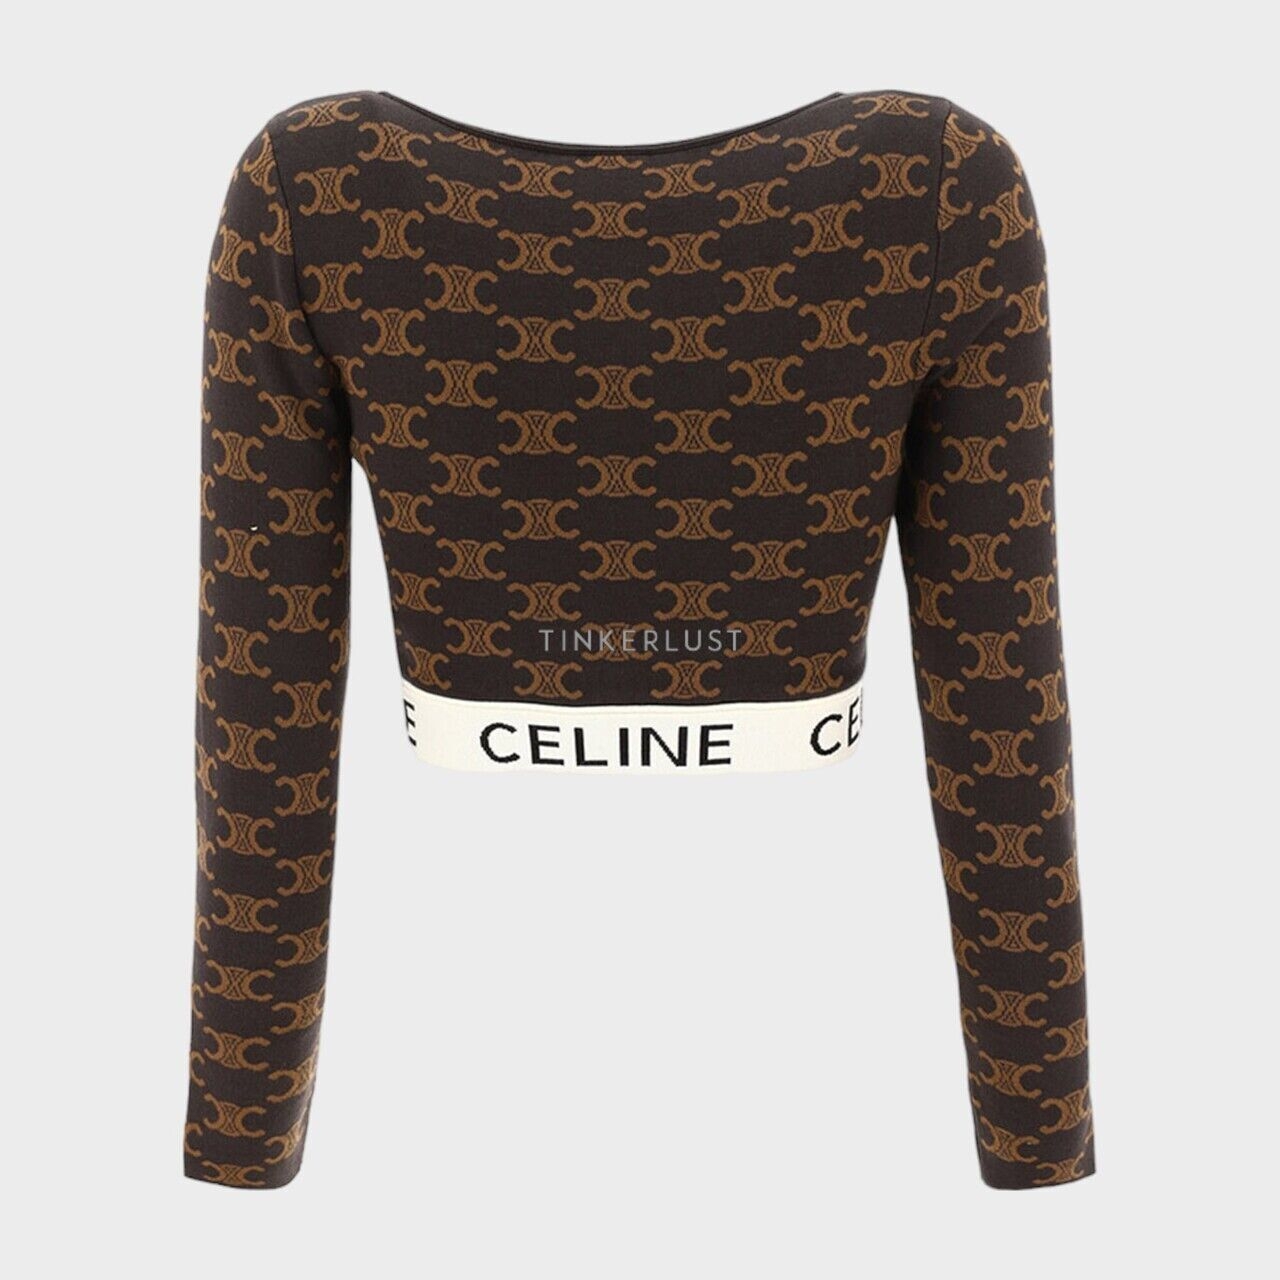 Celine Women Monogram Triomphe Long Sleeves Crop Top in Black/Tan Silk Cotton